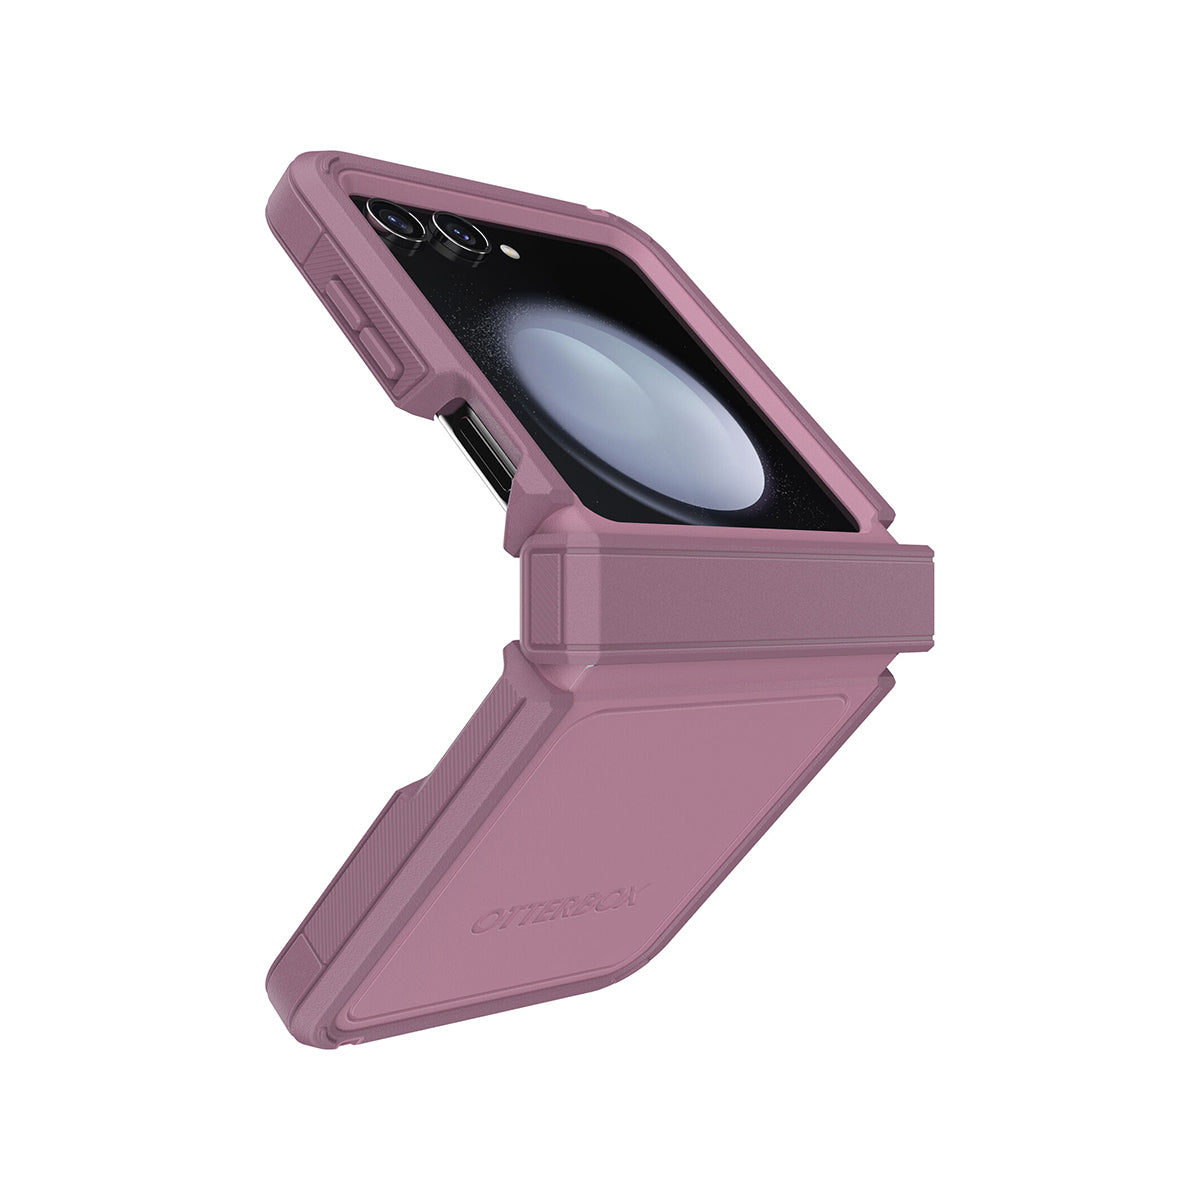 OtterBox Defender XT Flip Phone Case for Flip 5